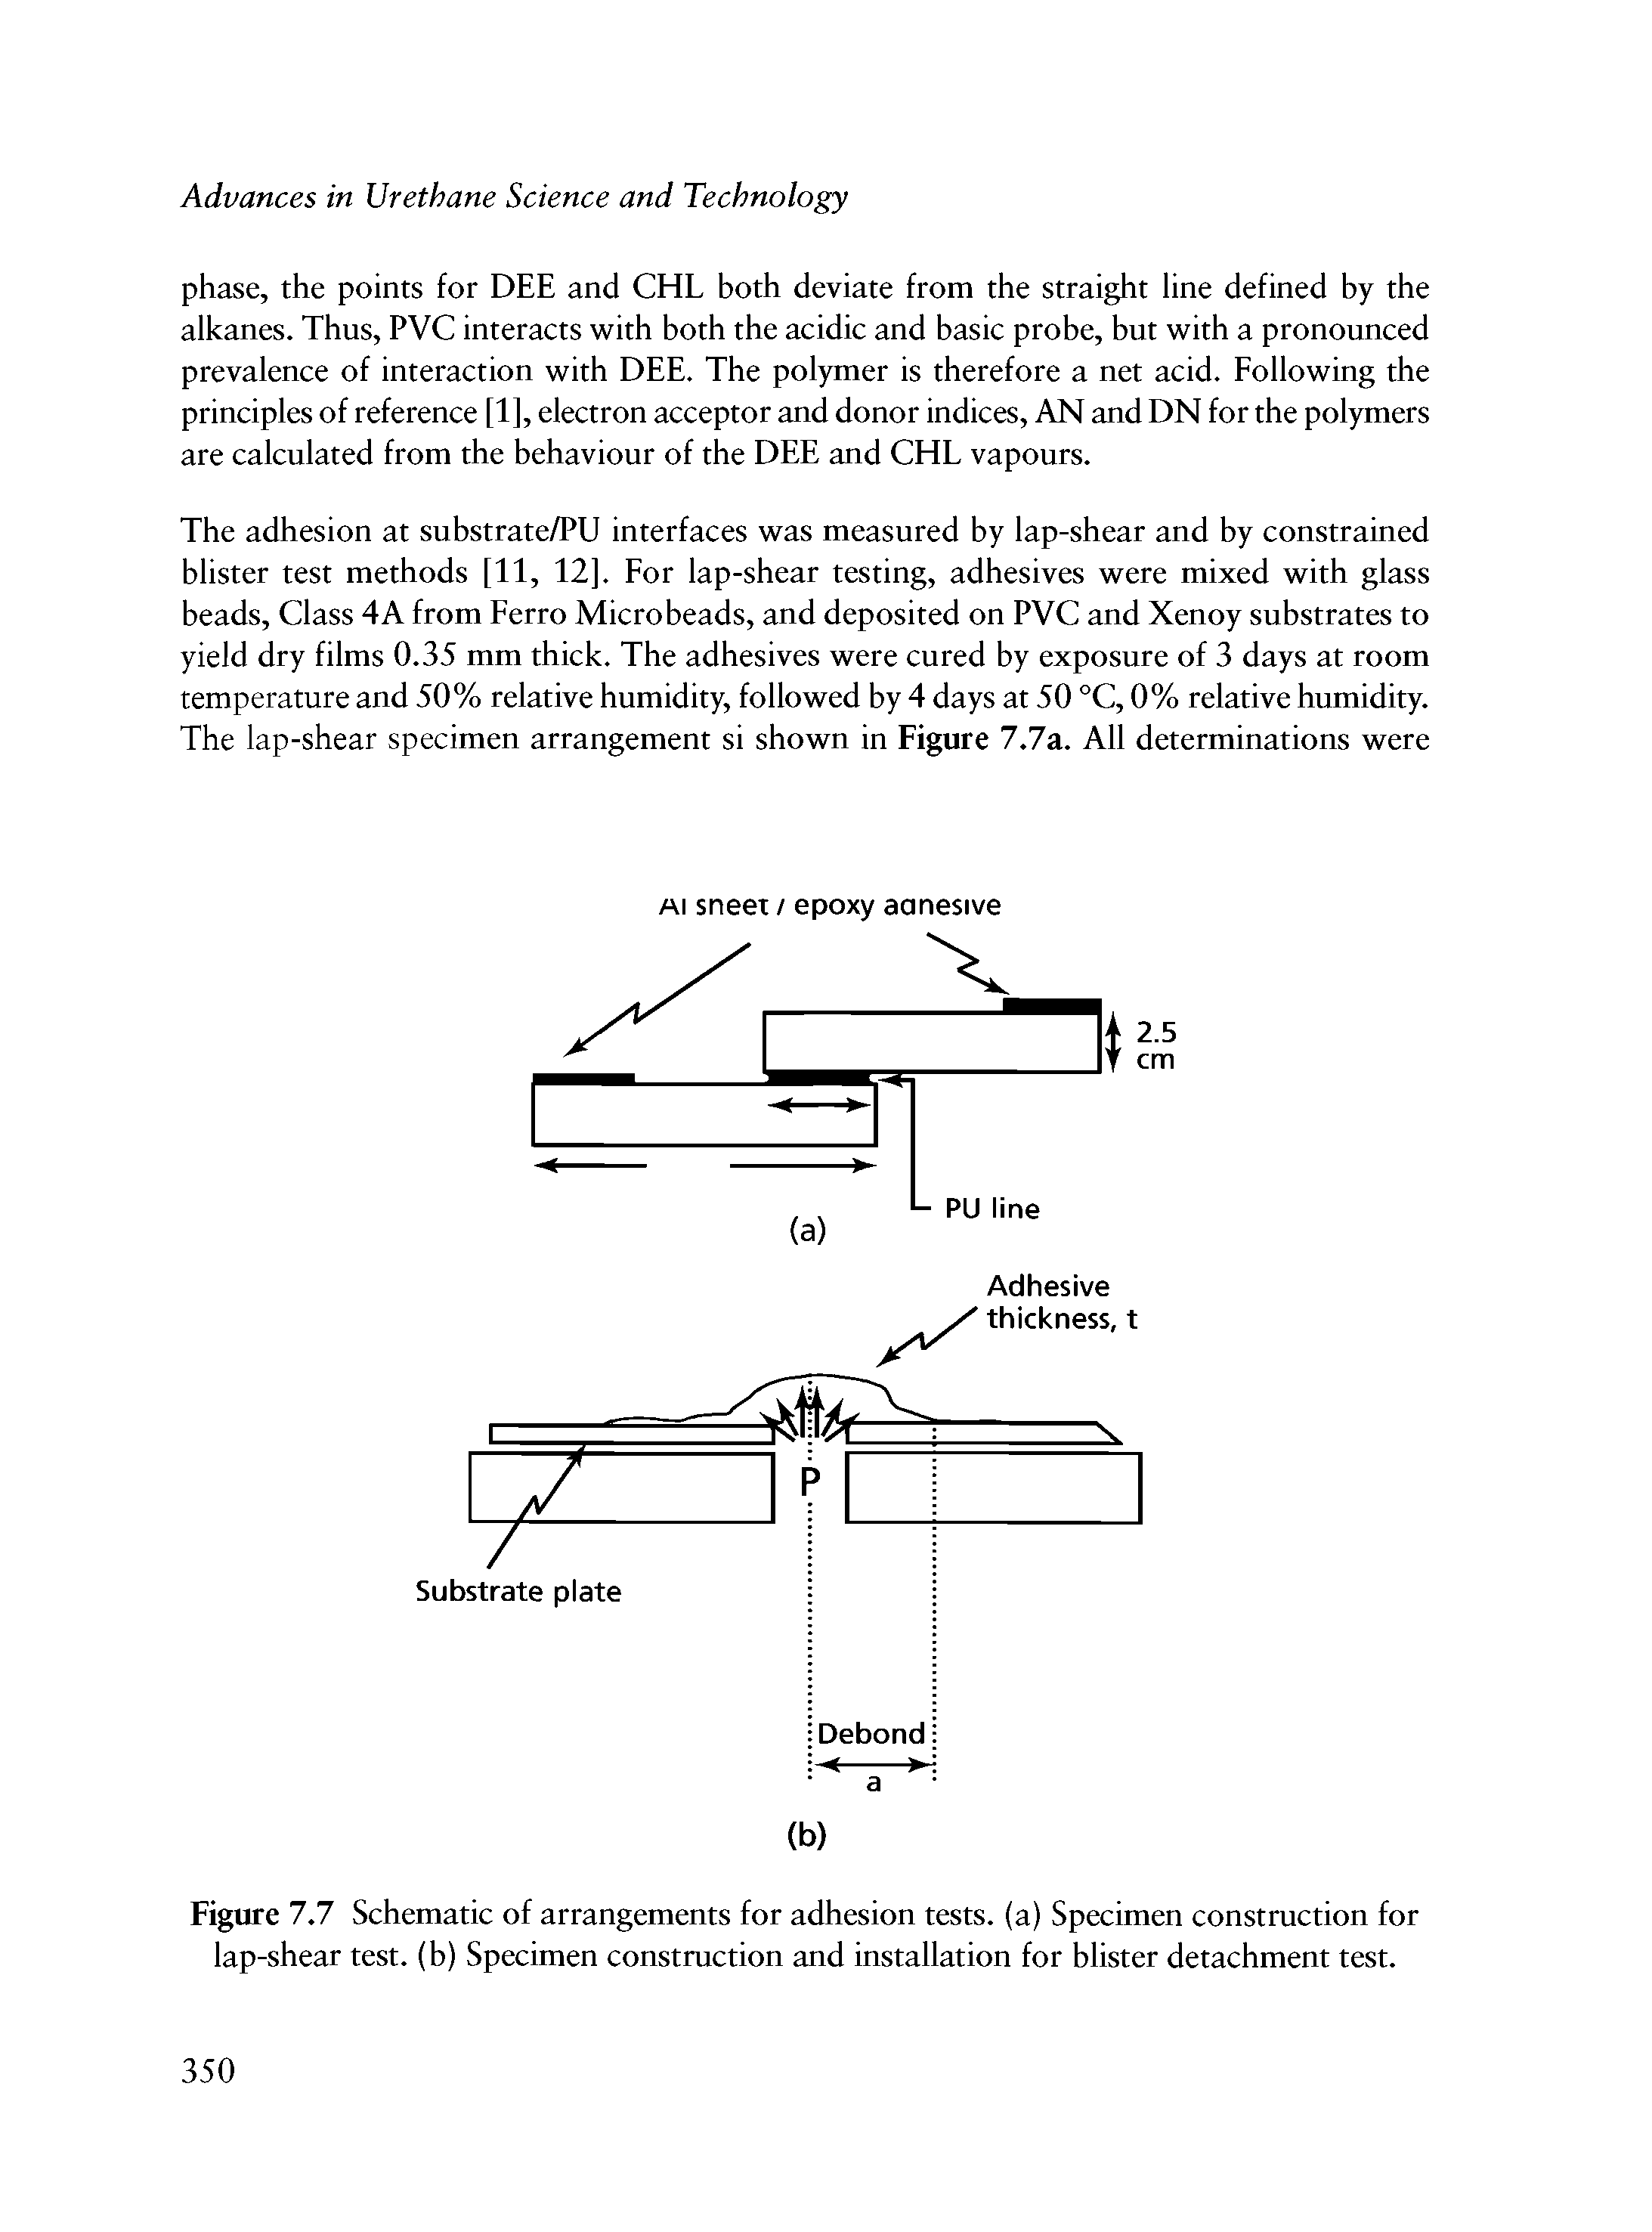 Figure 7.7 Schematic of arrangements for adhesion tests, (a) Specimen construction for lap-shear test, (b) Specimen construction and installation for blister detachment test.